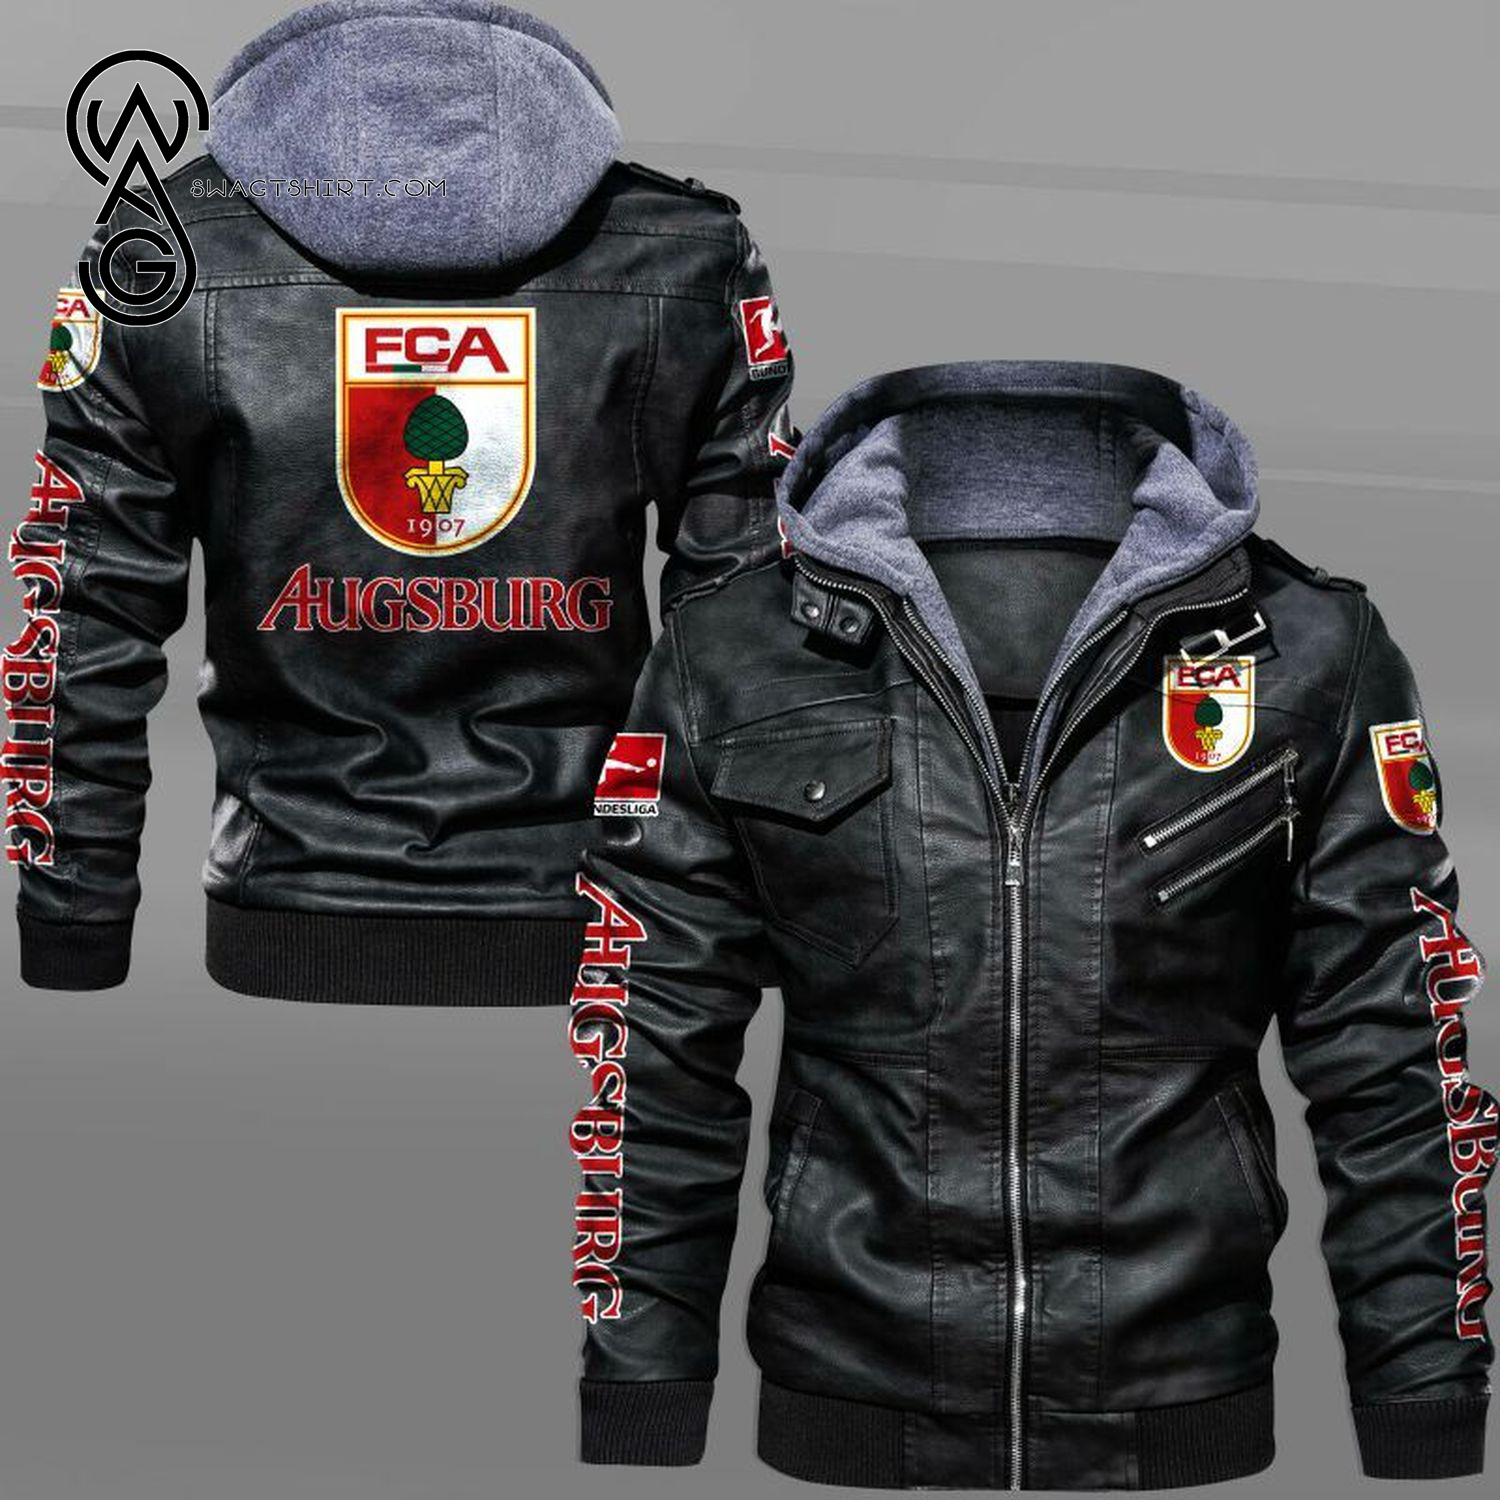 Augsburg Football Club Leather Jacket